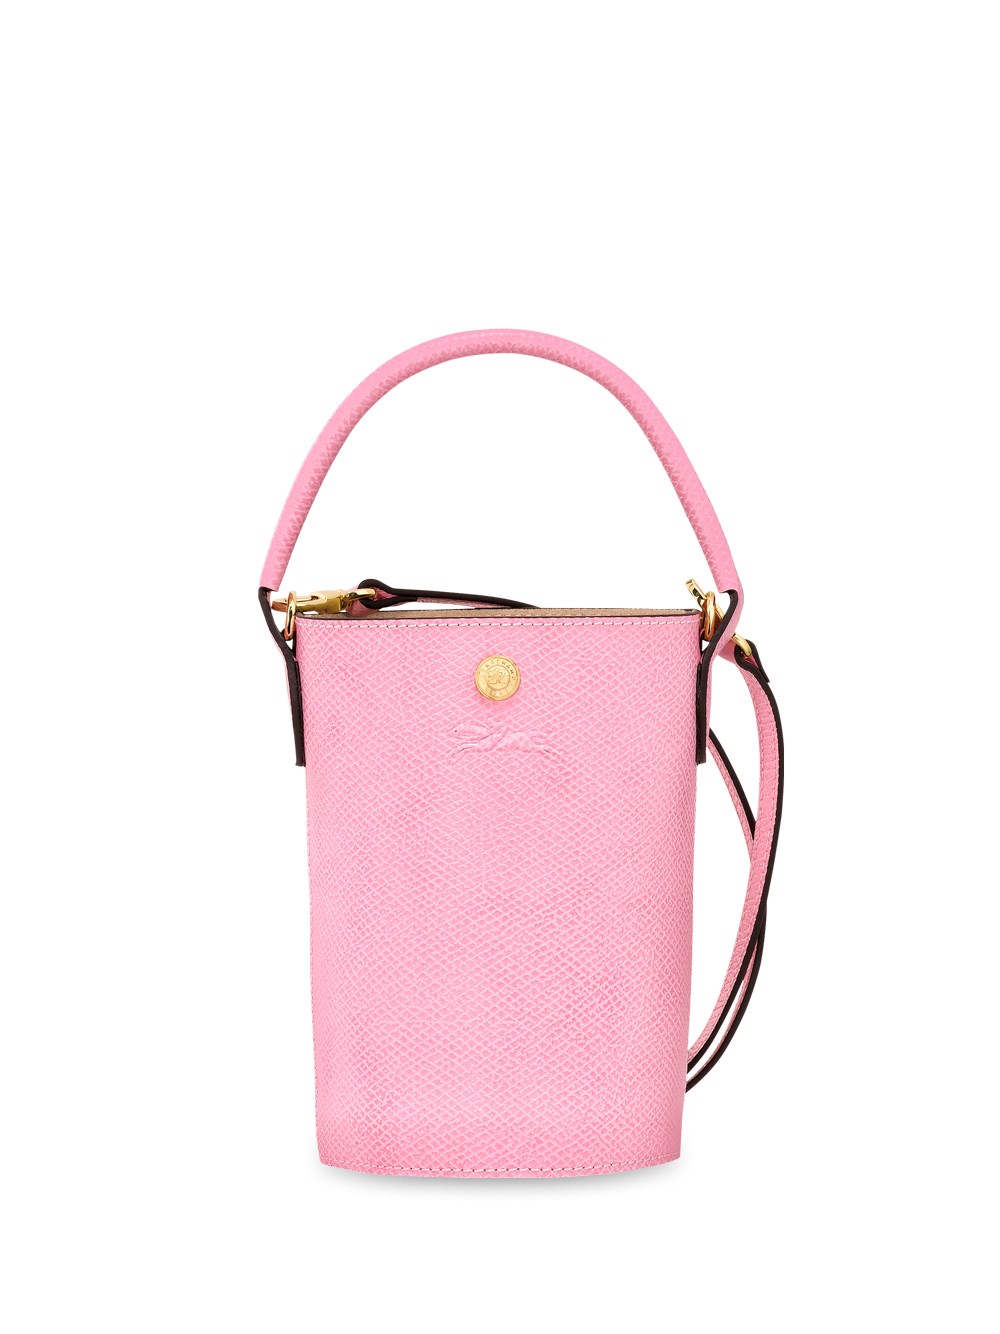 Longchamp Epure Small Bucket Bag